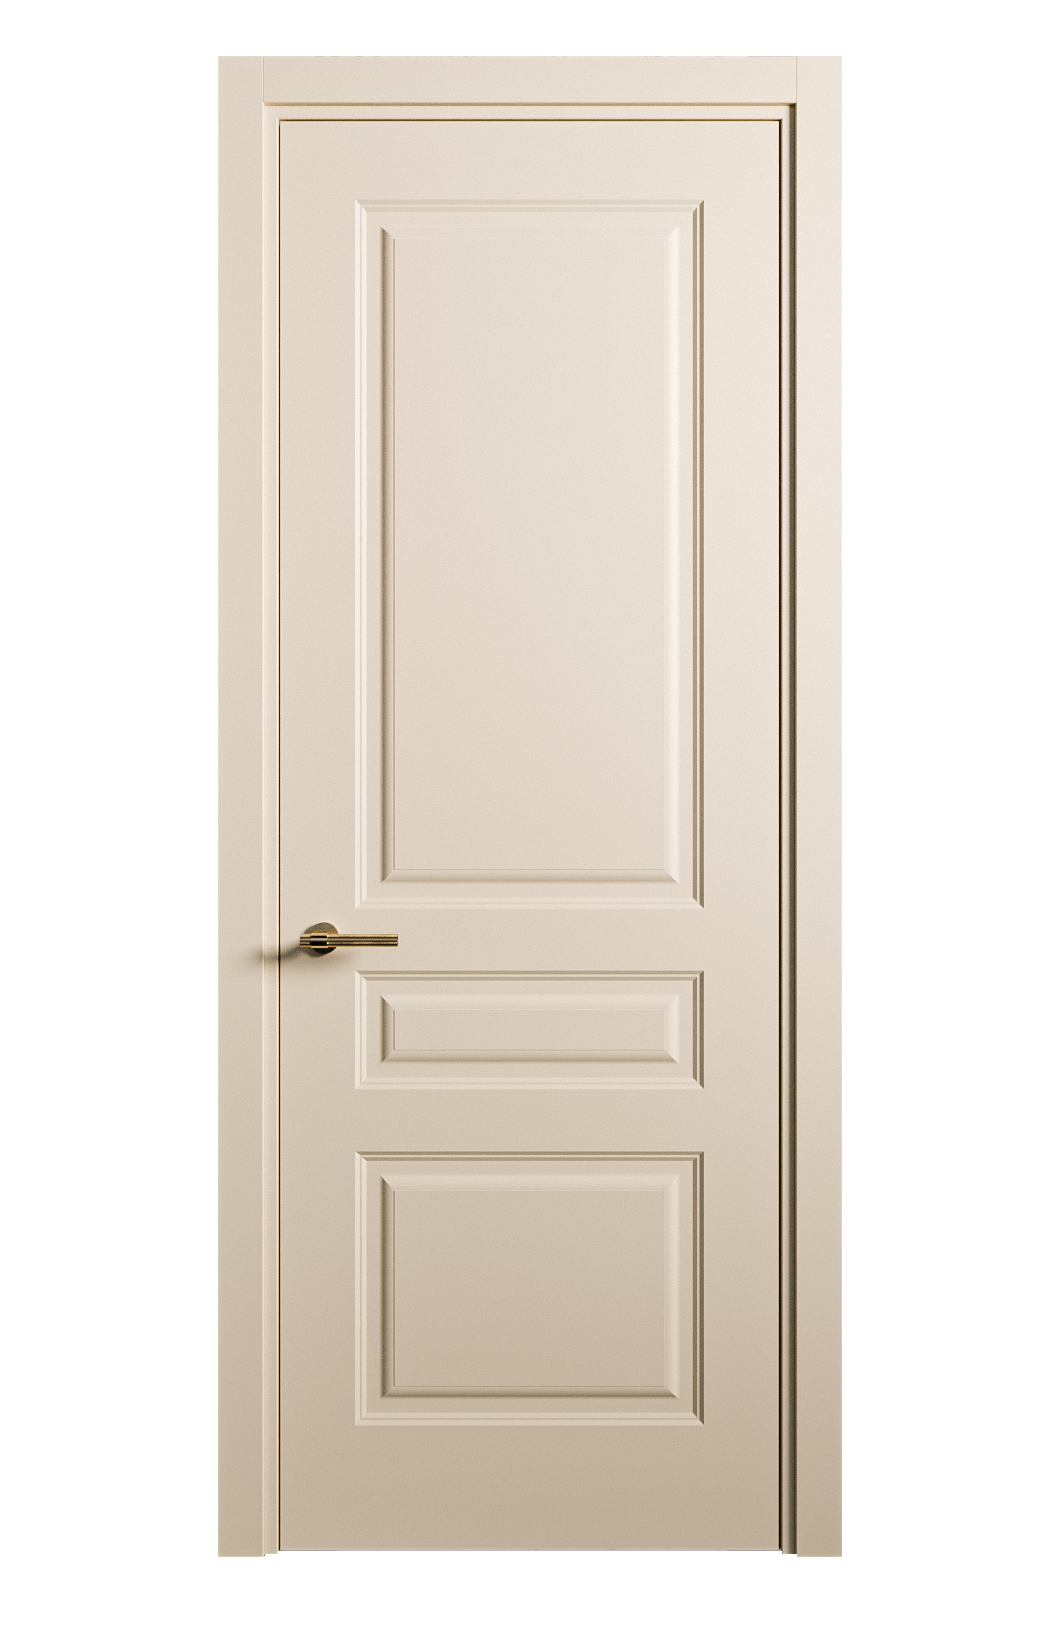 Межкомнатная дверь Вита-2 глухая эмаль ral 1015 26370